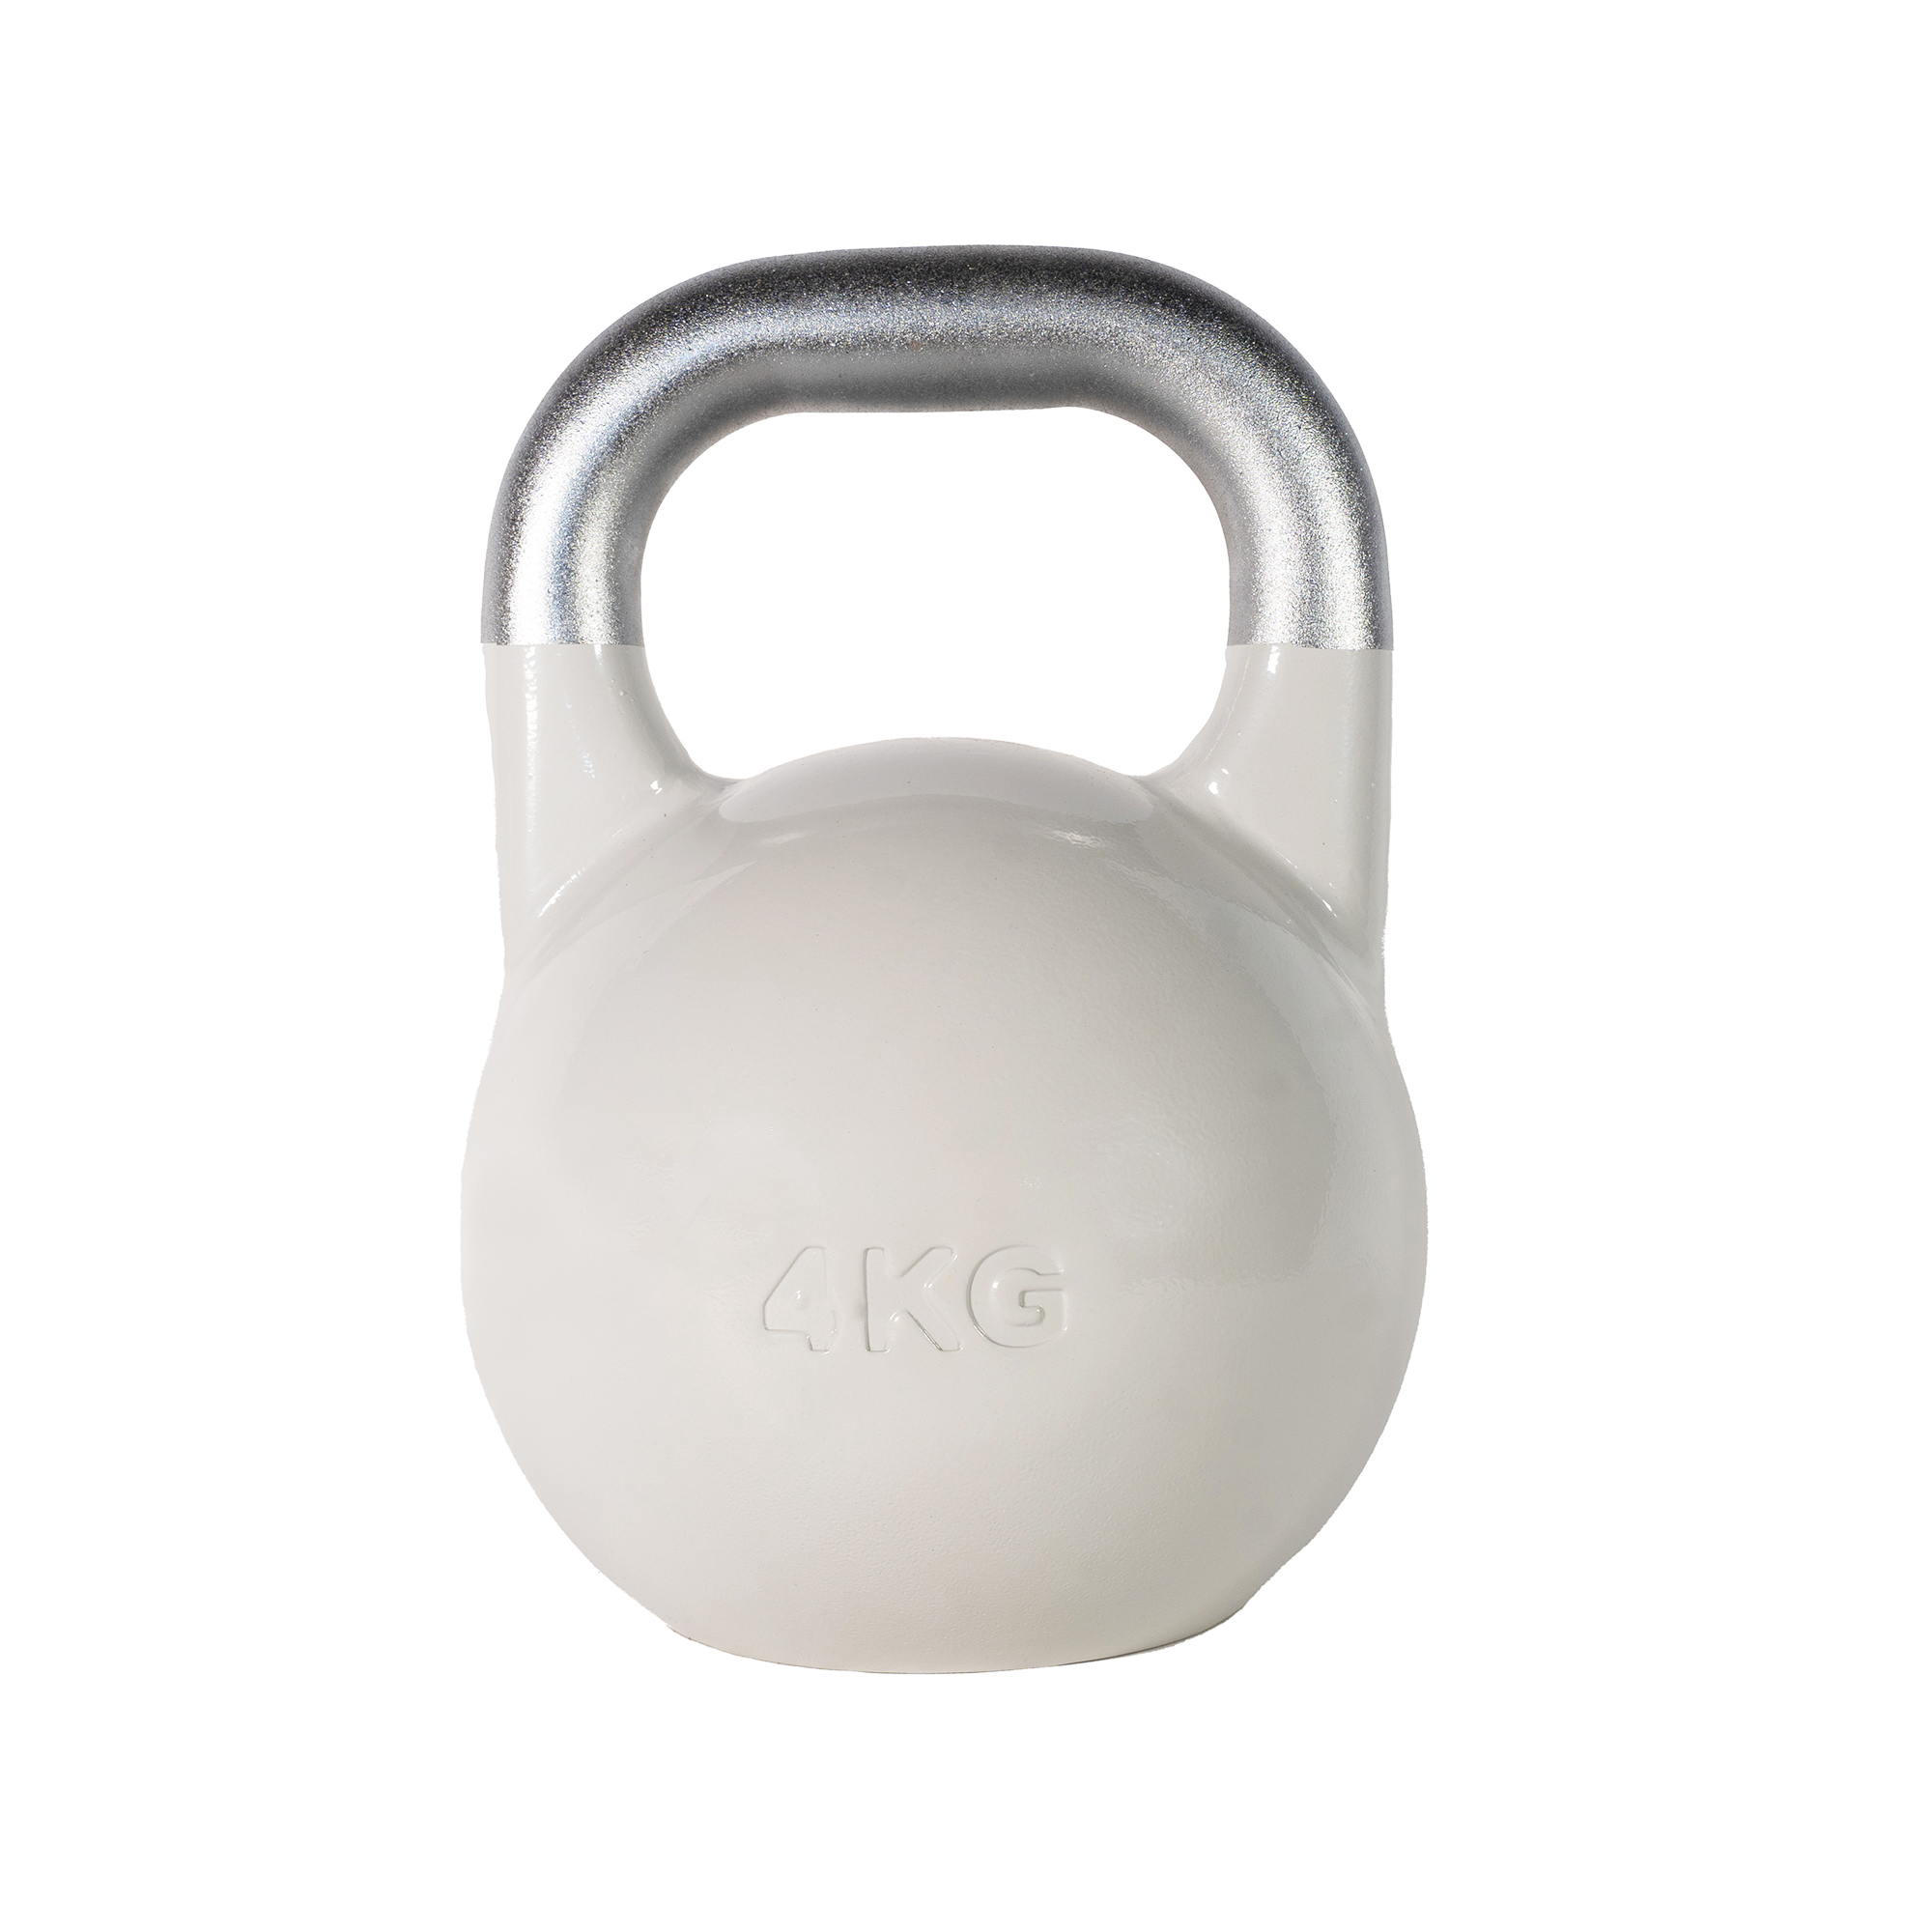 SQ&SN Competition Kettlebell (4 kg) i støbejern. Udstyr til crossfit træning, styrketræning og funktionel træning